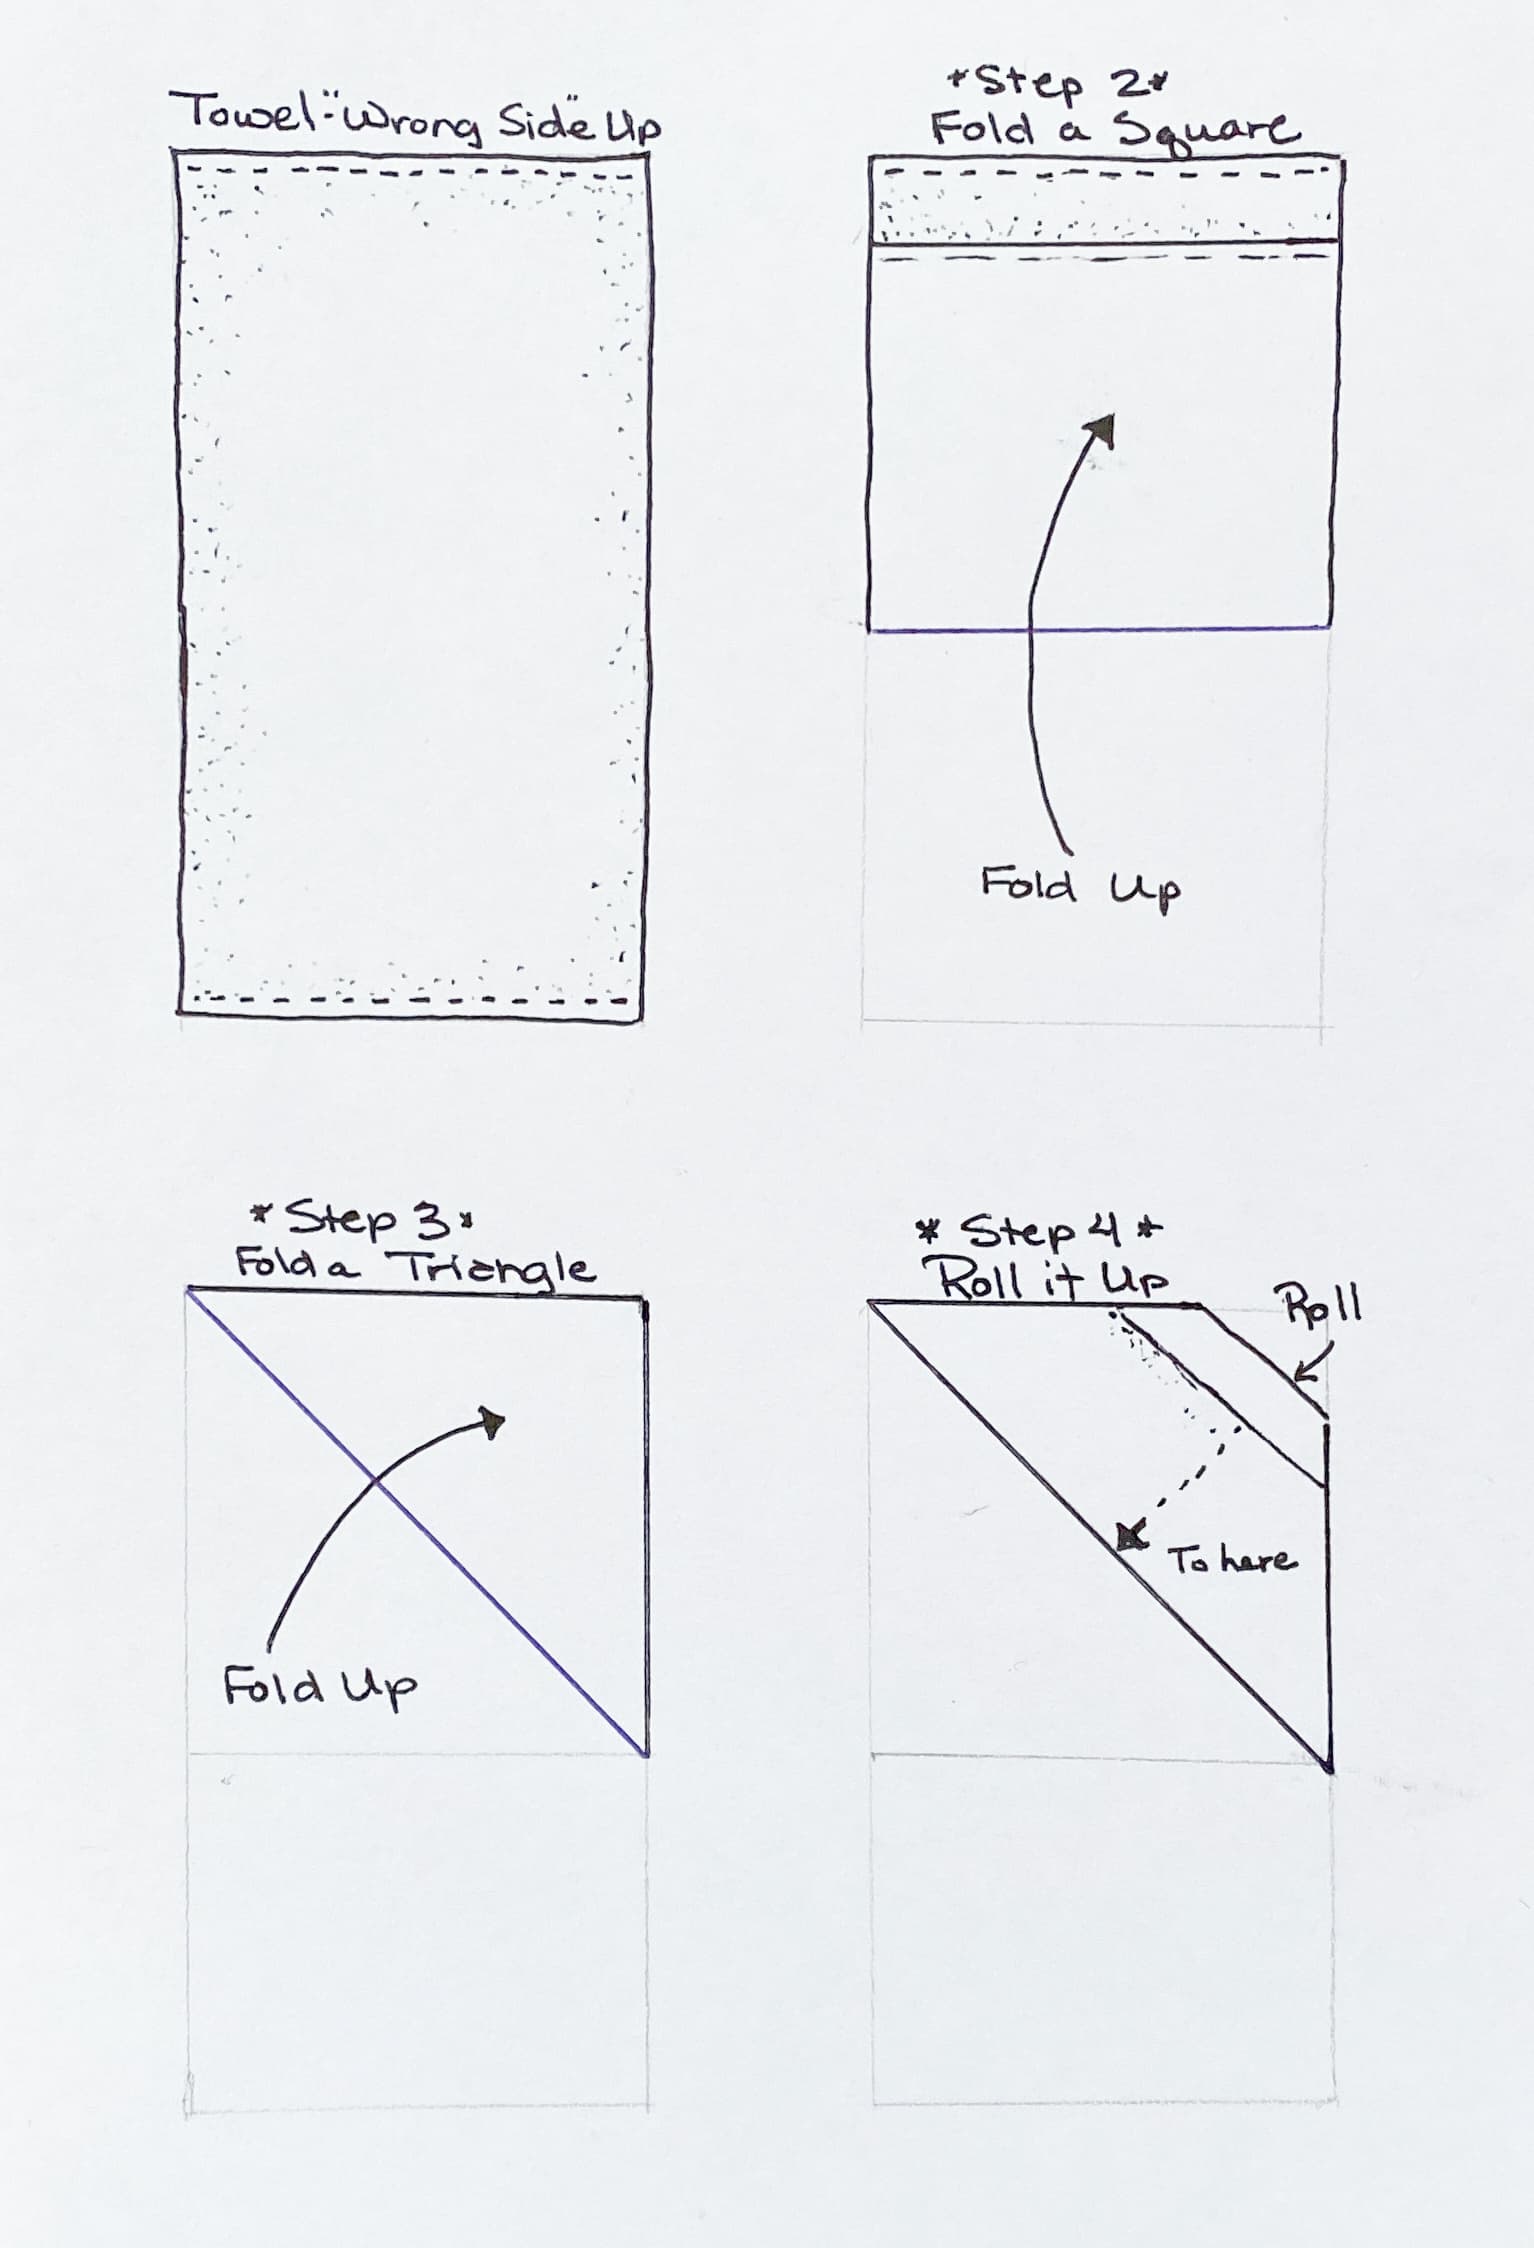 Line illustration of folds done in Steps 2 - 4. 